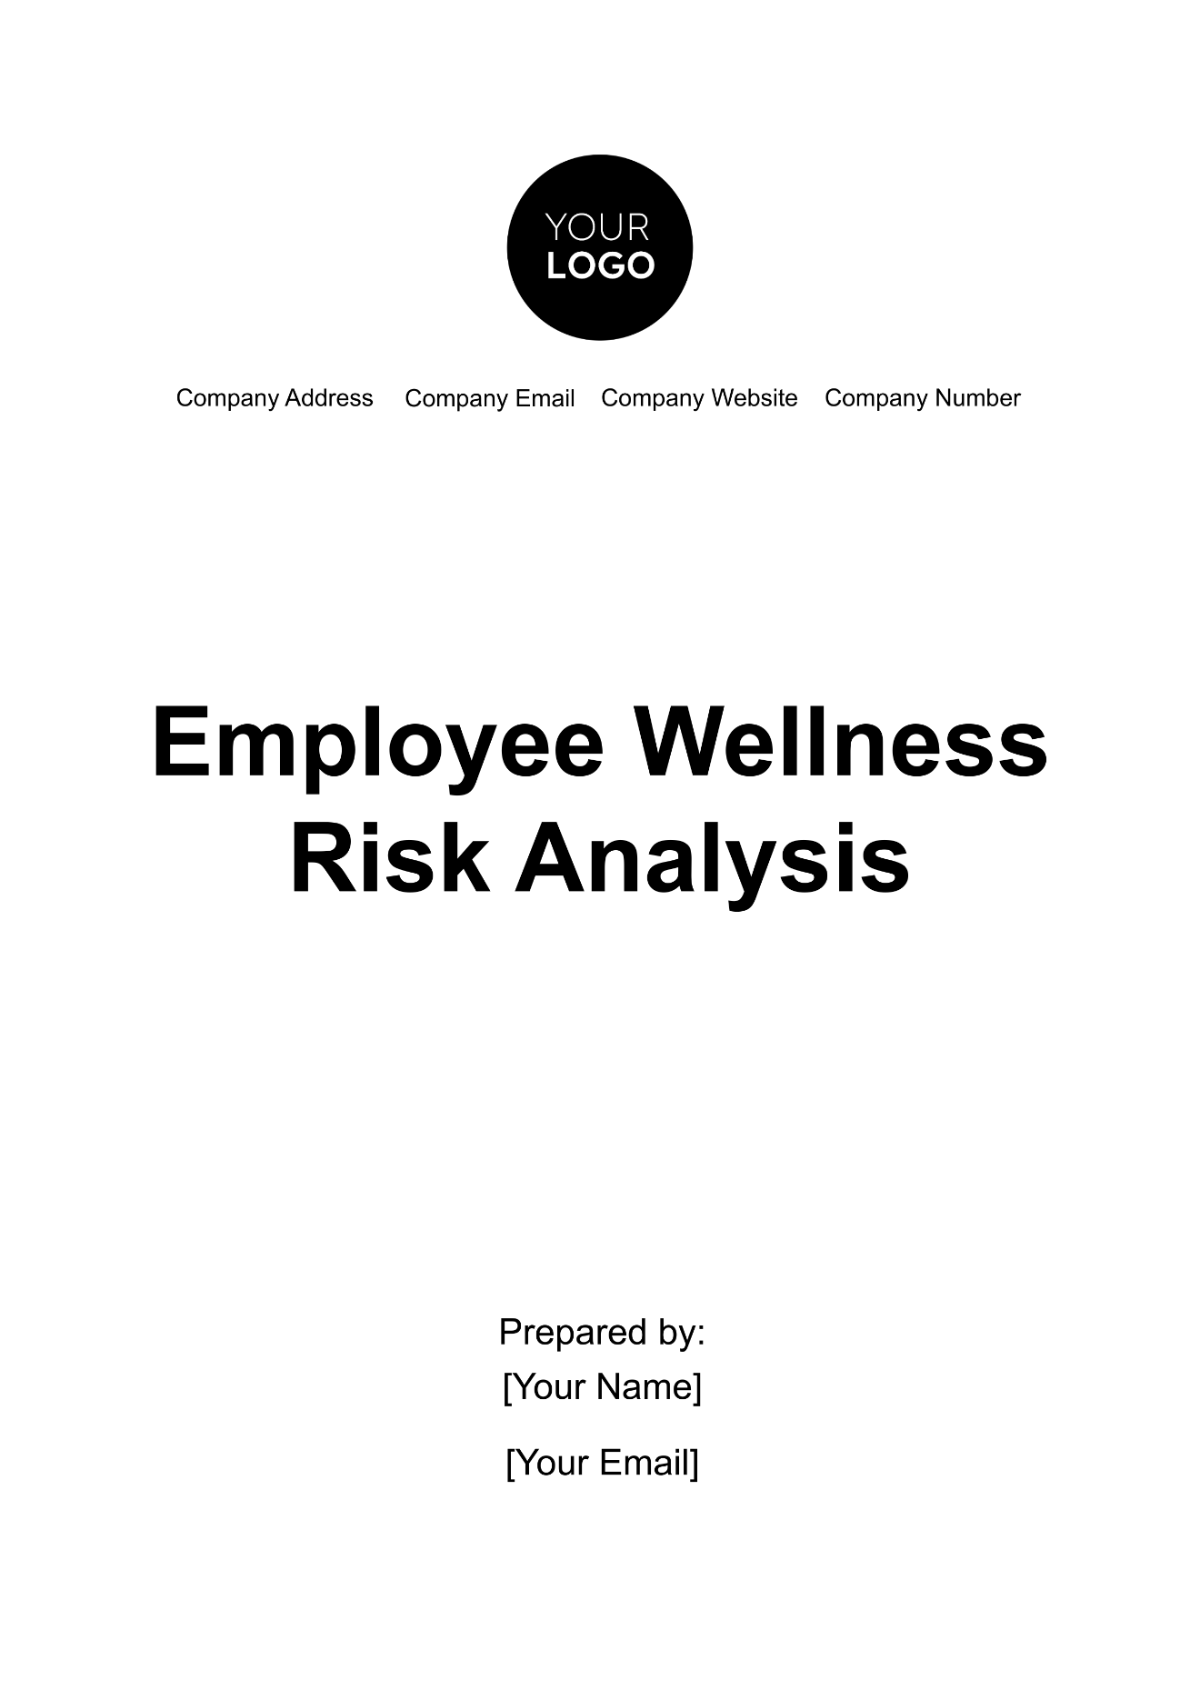 Employee Wellness Risk Analysis Template